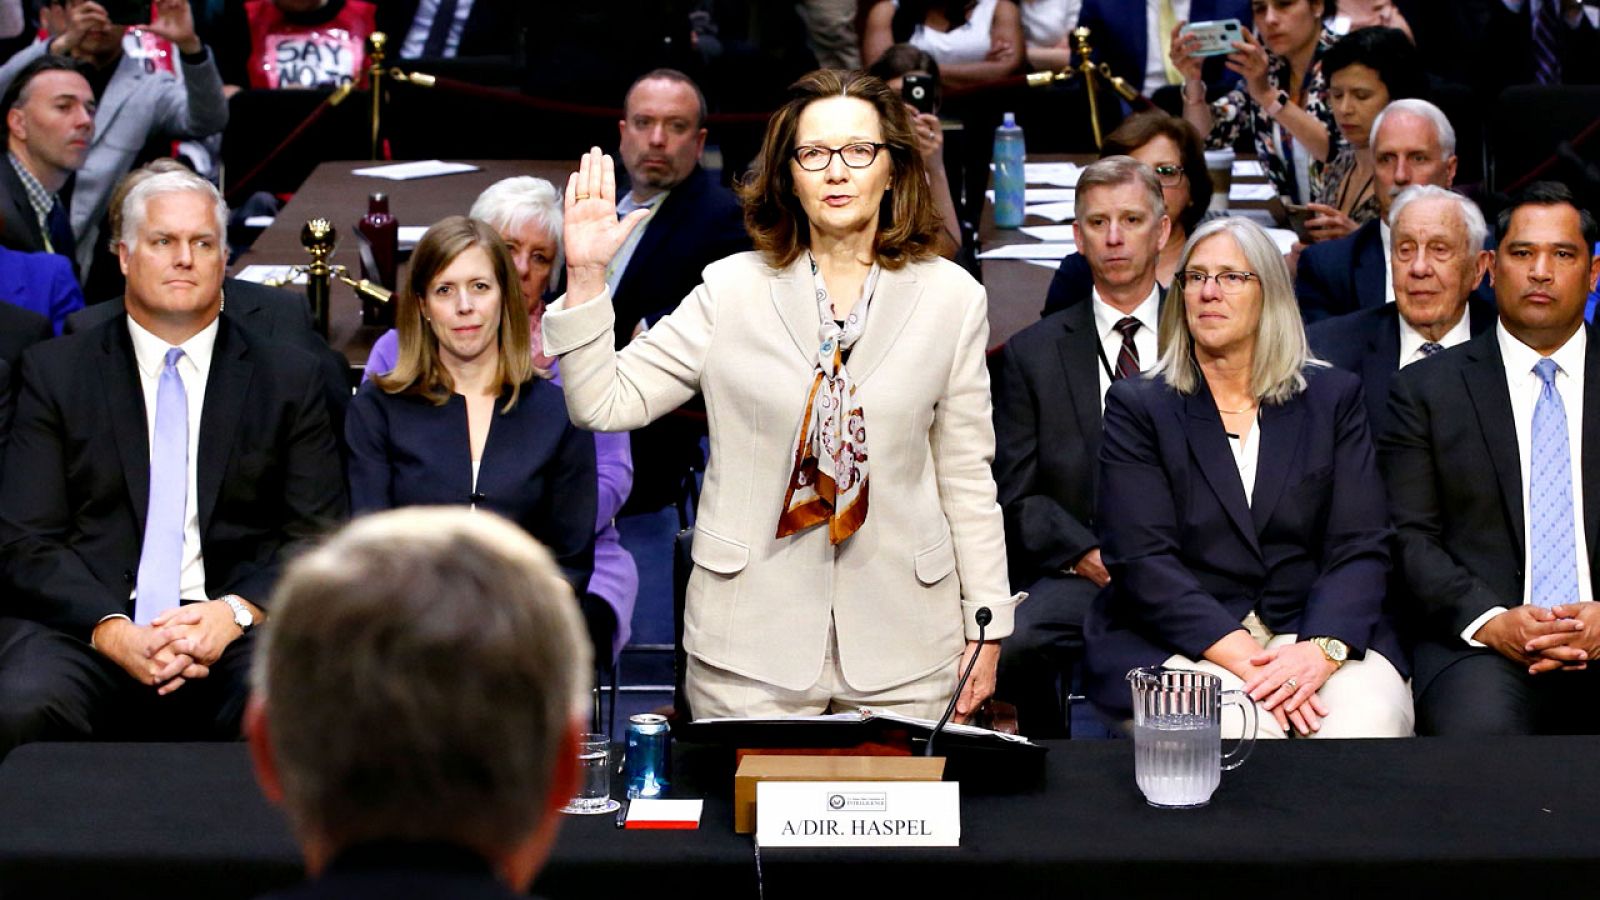 La candidata a dirigir la CIA, Gina Haspel, presta juramento antes de comparecer ante el Comité de Inteligencia del Senado para su confirmación